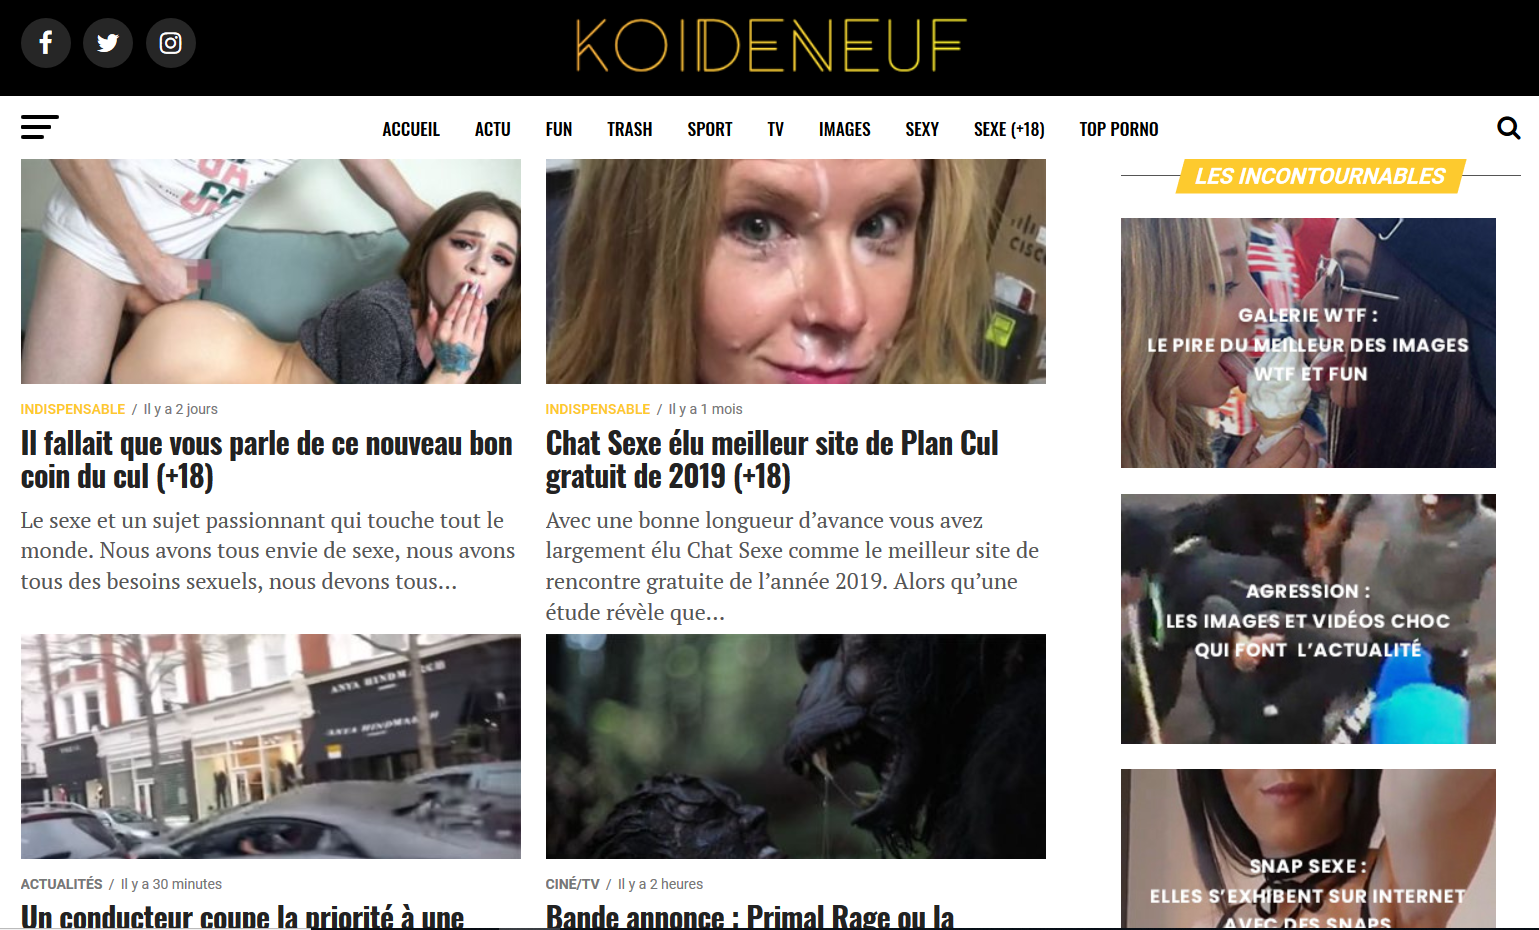 KOI-DE-NEUF.fr le site Porn & médias